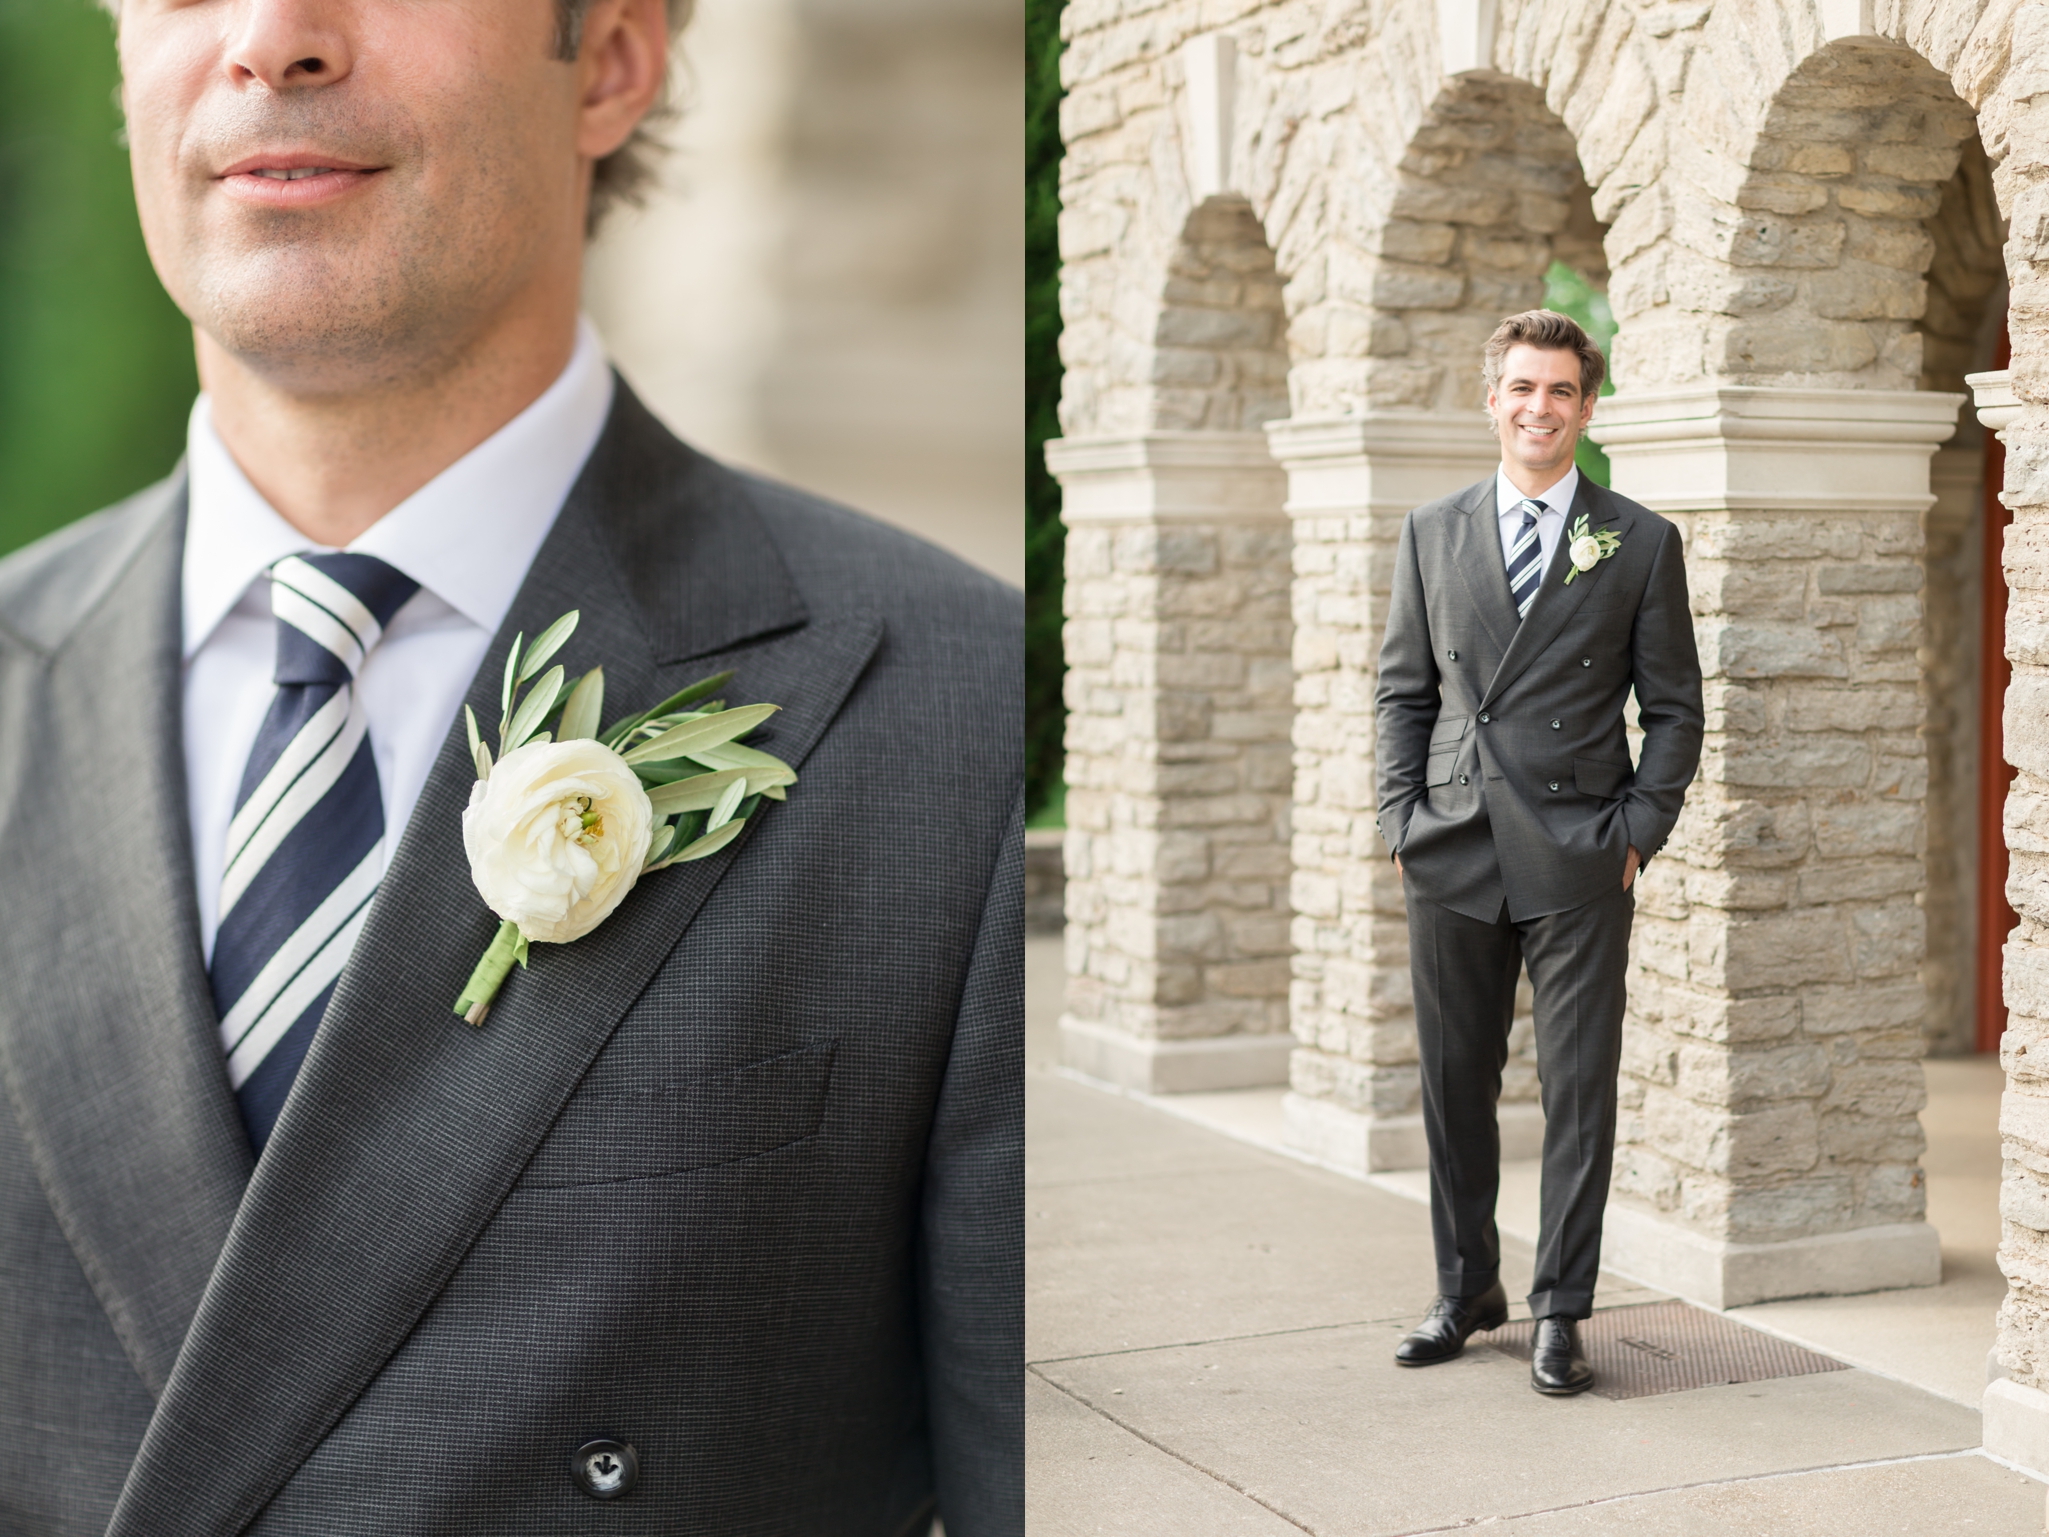 Charlie Rittgers wedding suit by Philippe Haas Bespoke Tailoring at Cincinnati Wedding